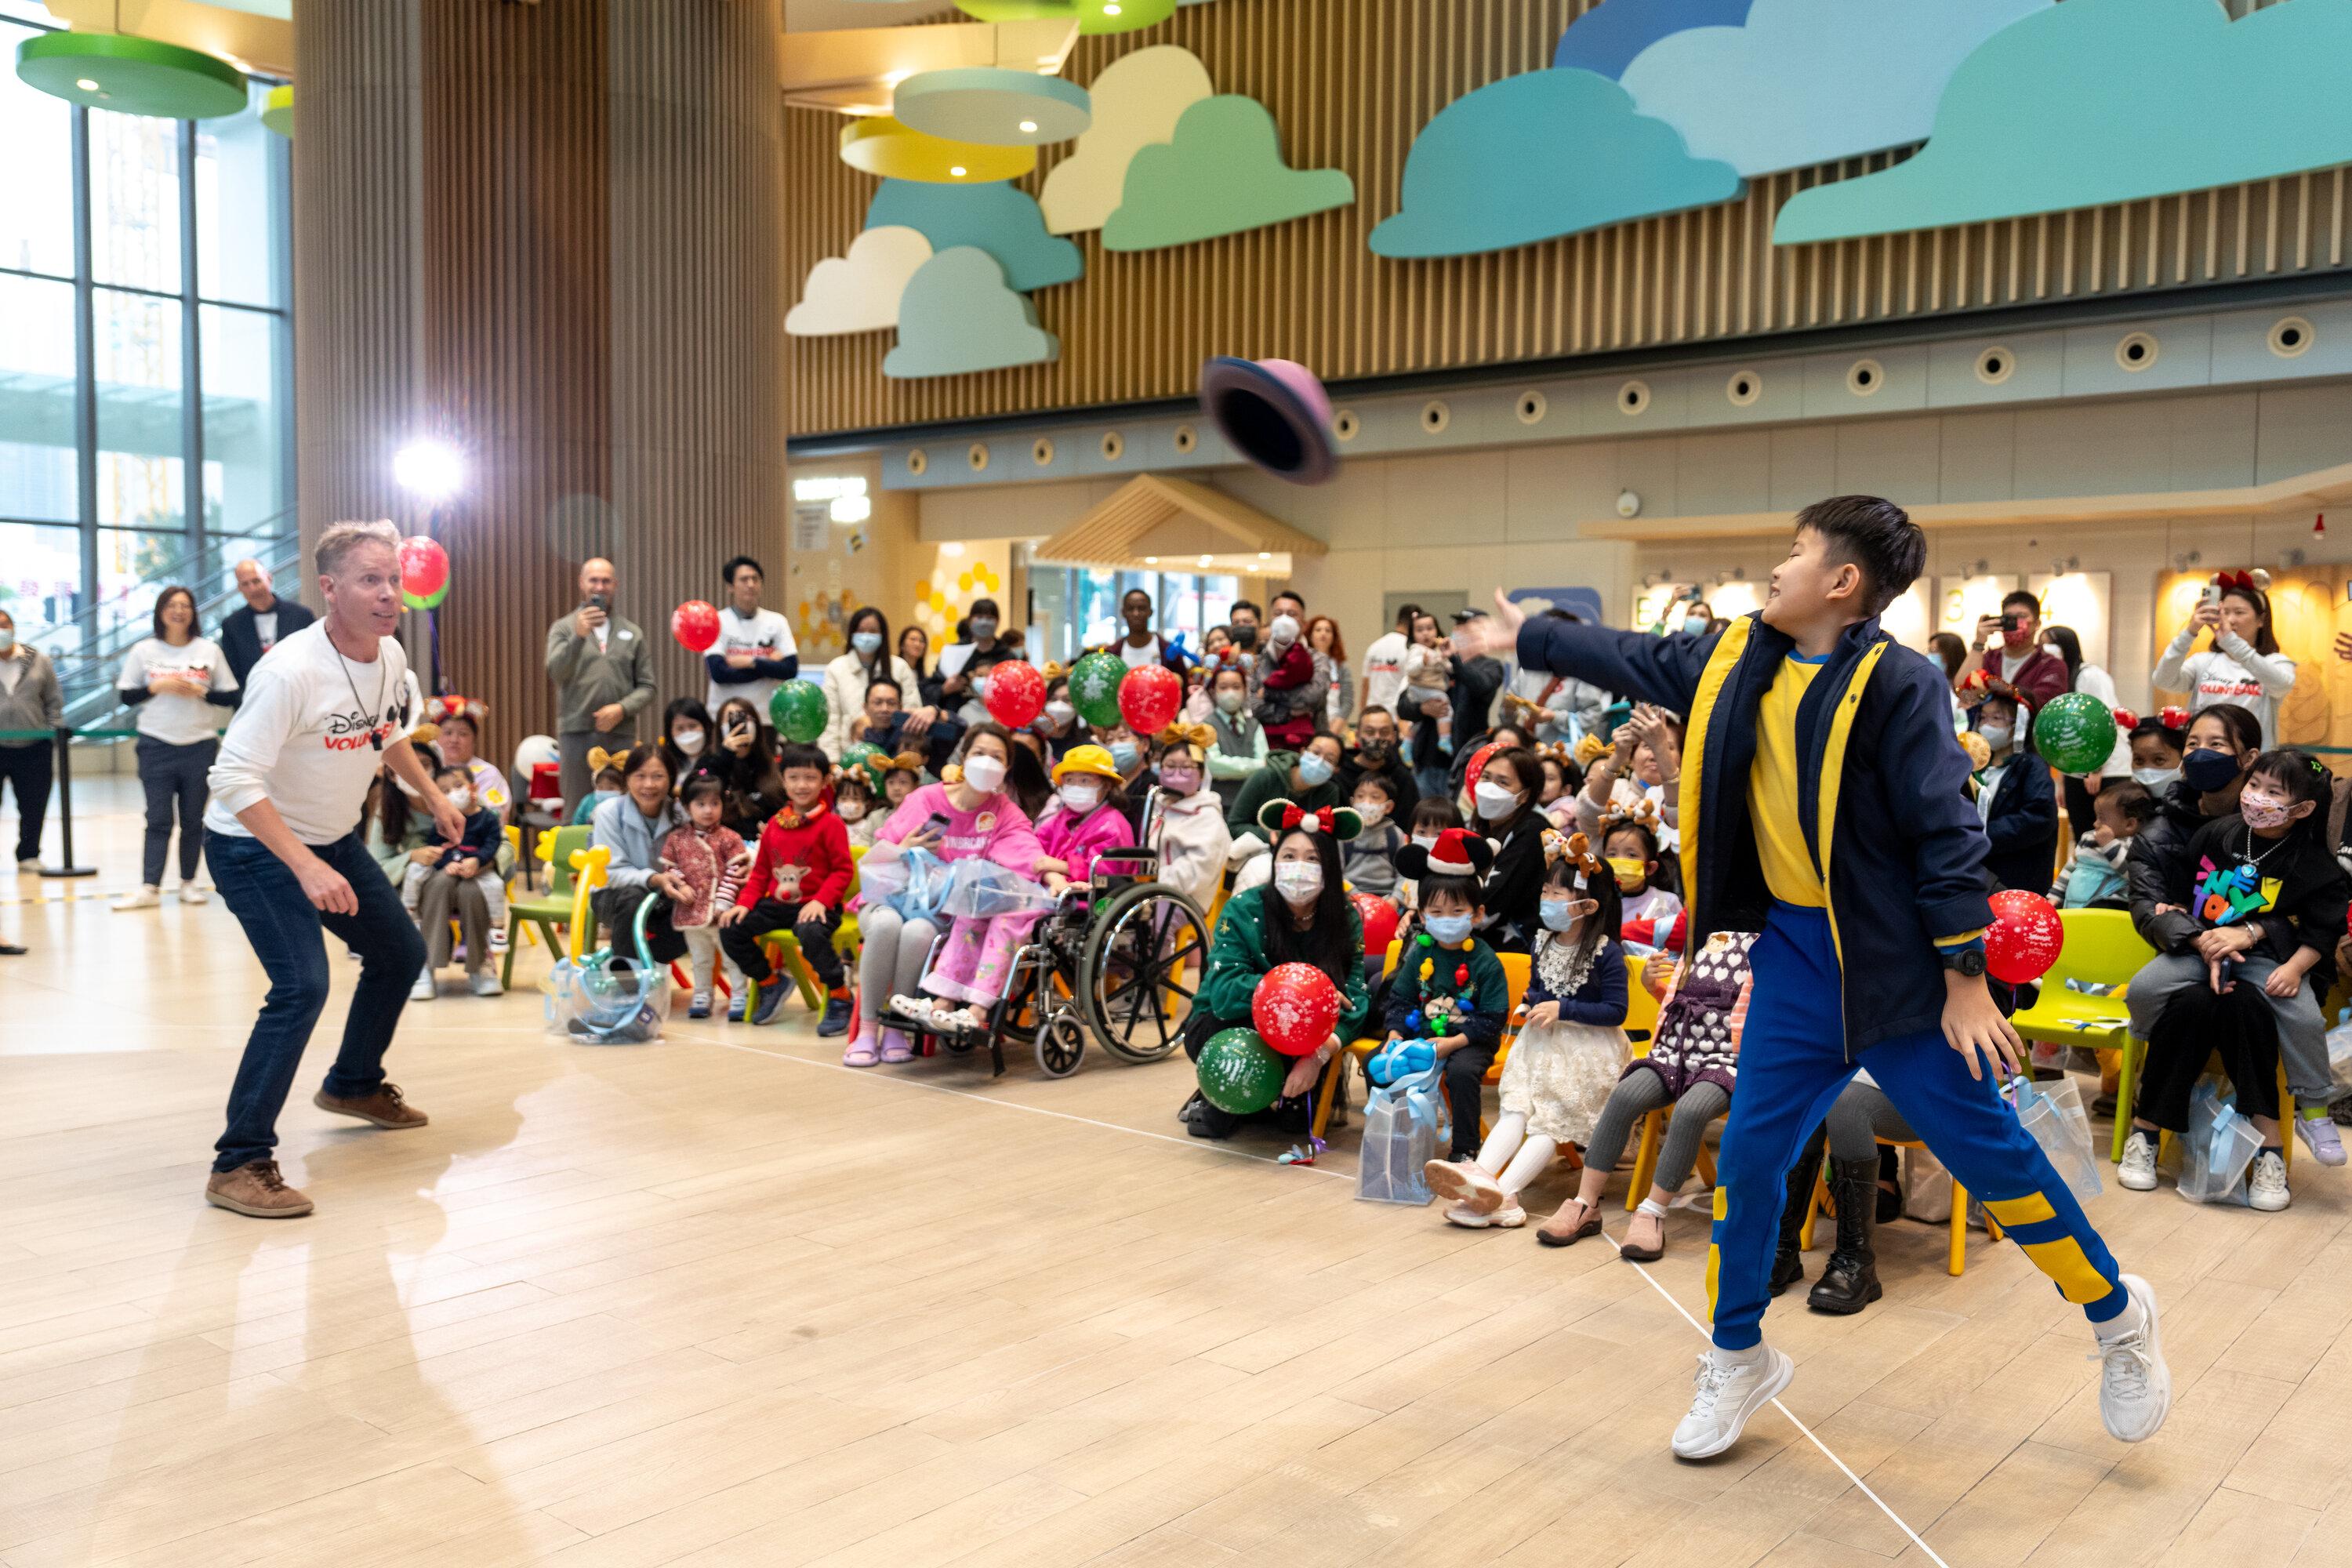 香港儿童医院与迪士尼义工队合作，在医院大堂为病童及家人举办圣诞派对，精彩节目包括歌舞、魔术和摊位游戏等，欢声笑语不绝。
